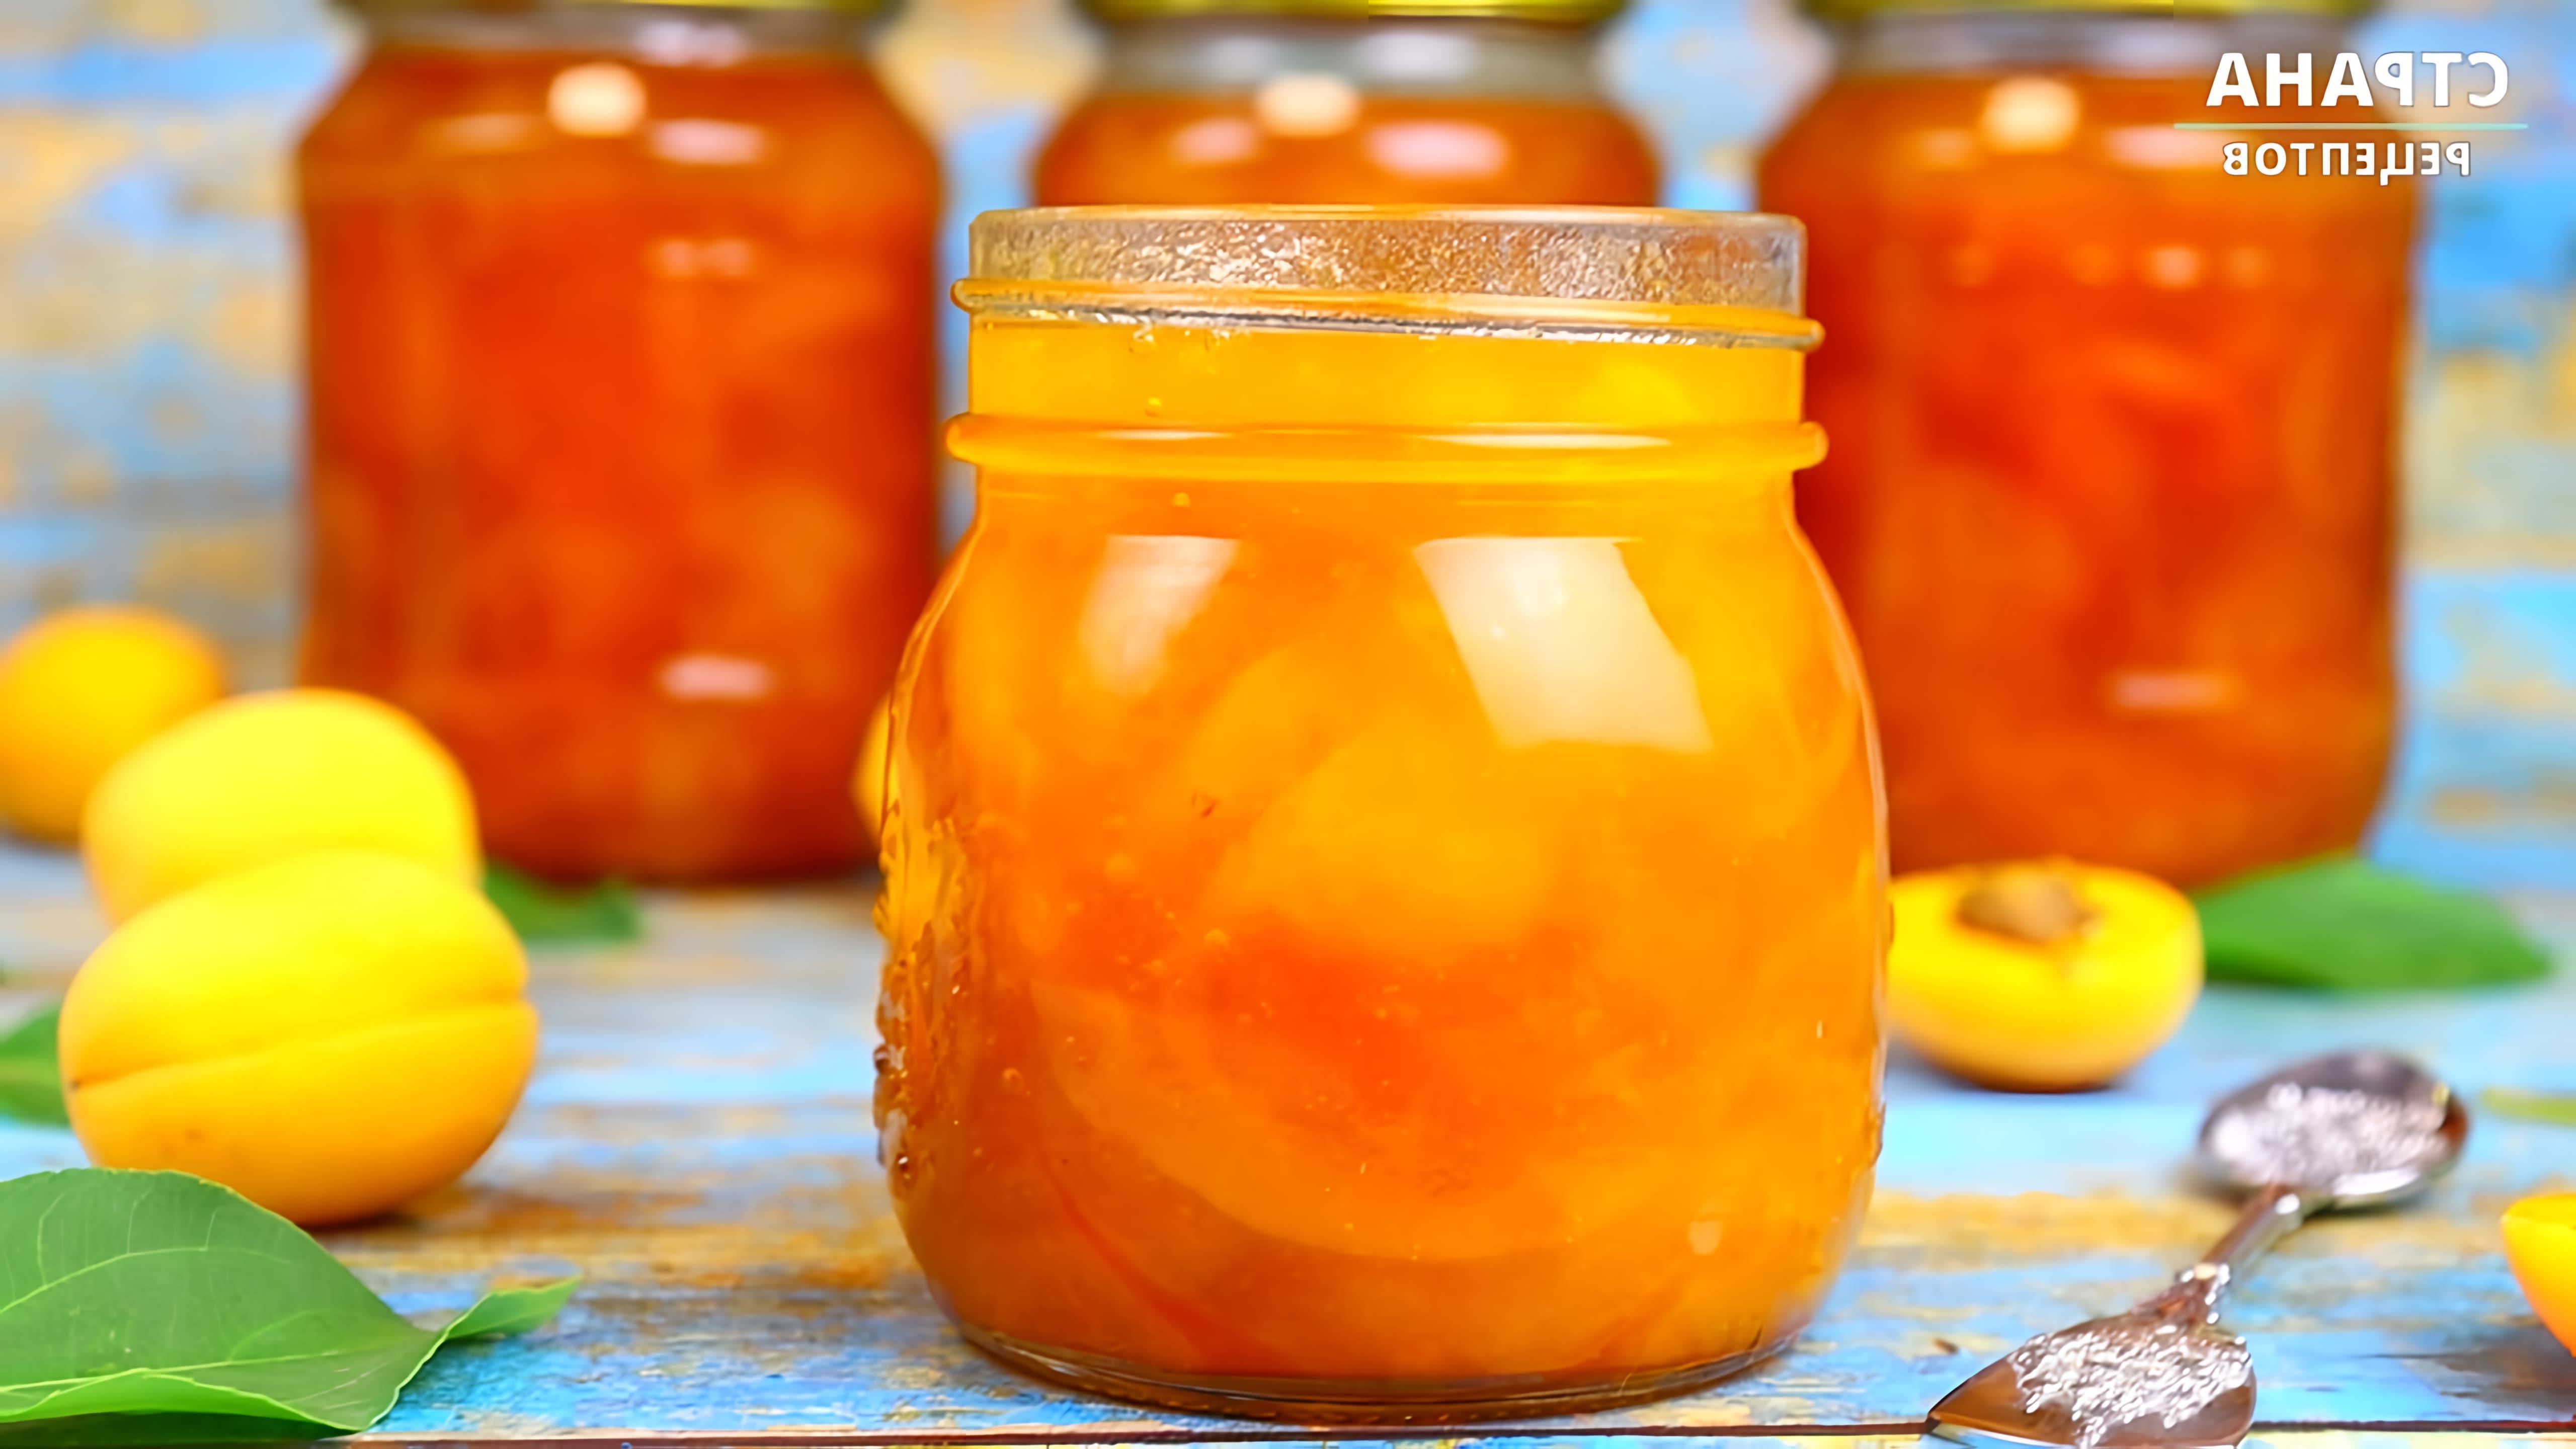 В этом видео демонстрируется процесс приготовления абрикосового варенья, которое получается очень вкусным и ароматным